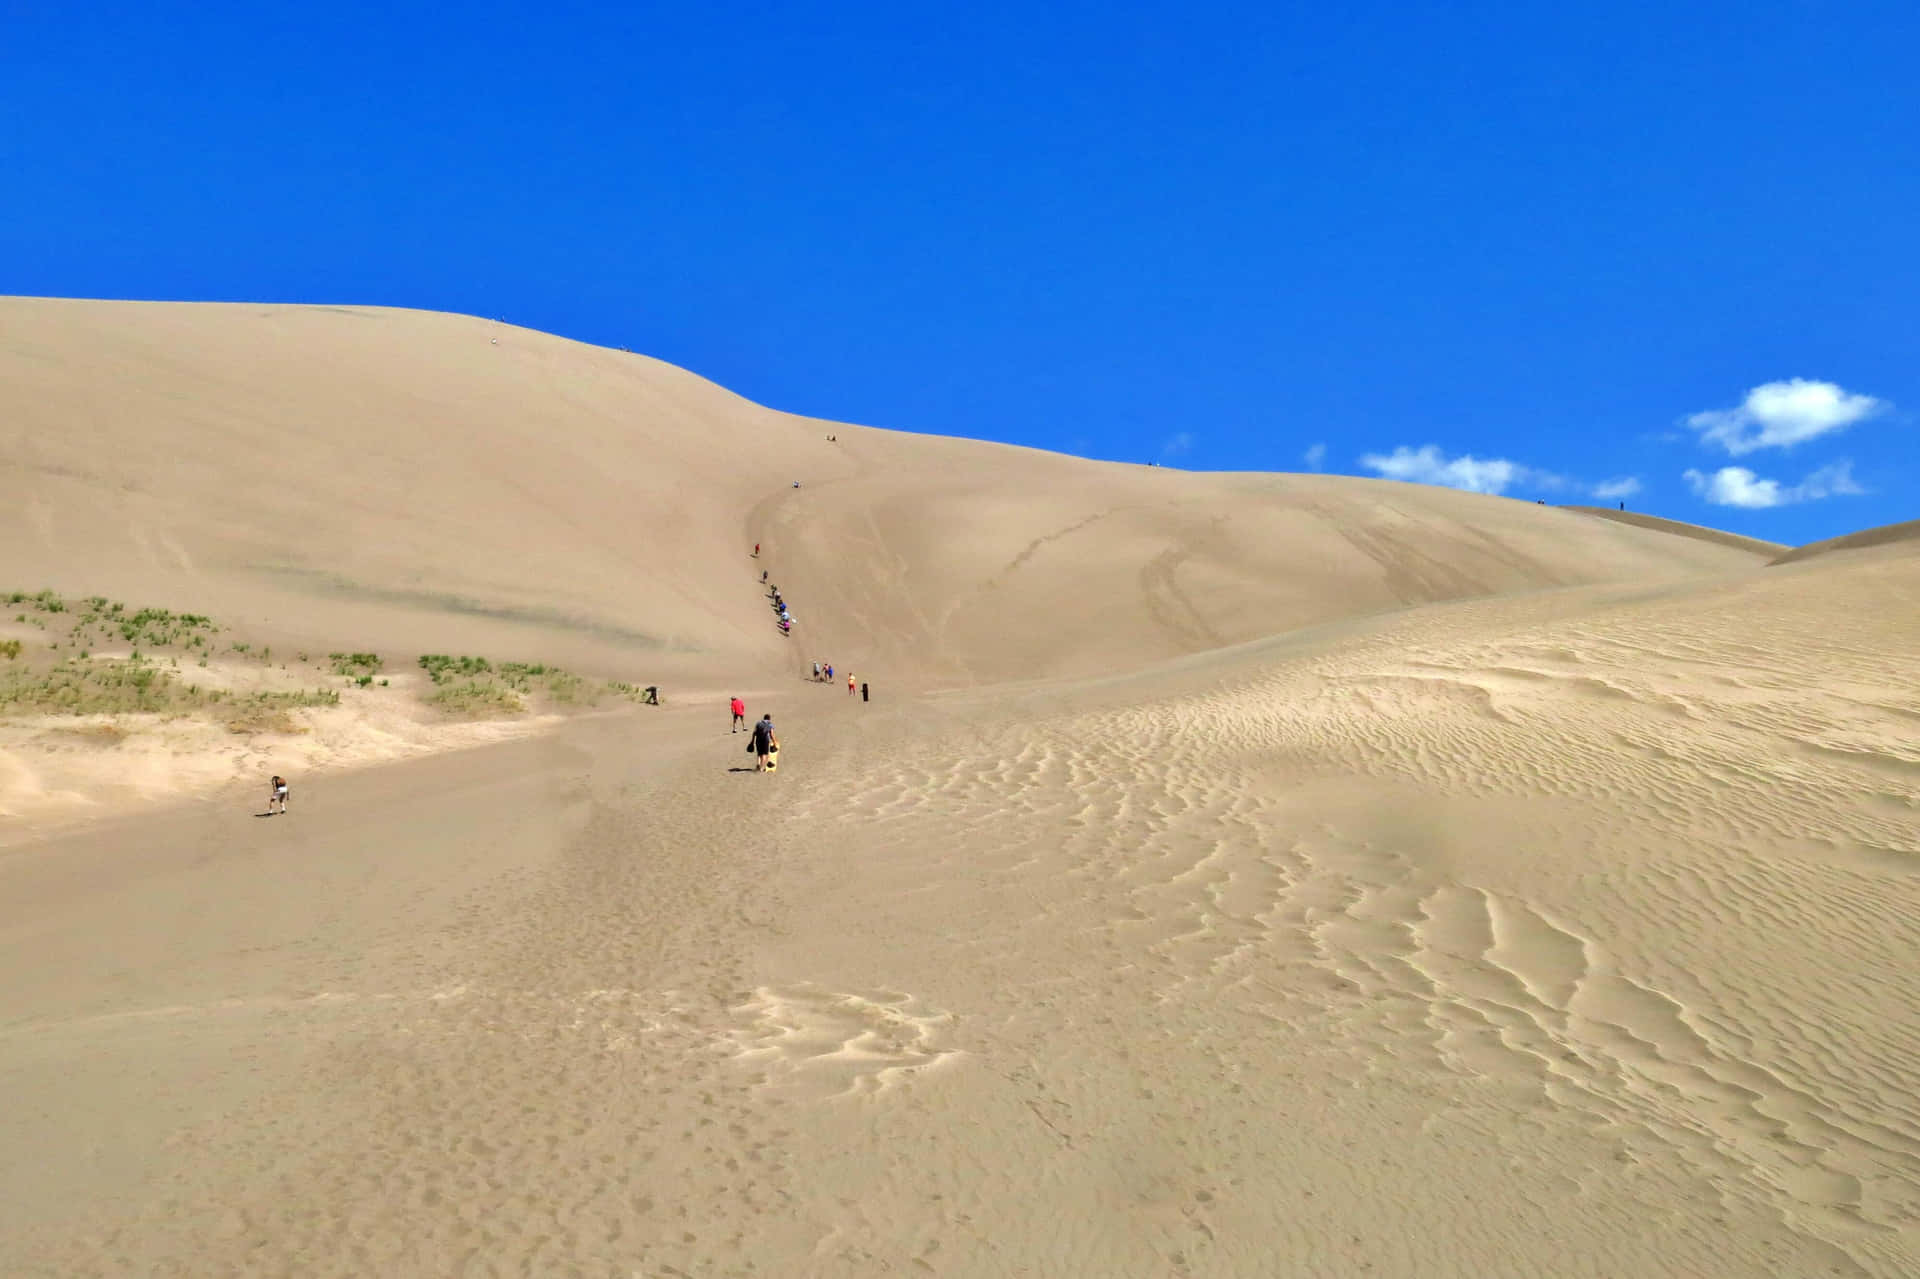 Menneskergår På En Sandklit I Ørkenen